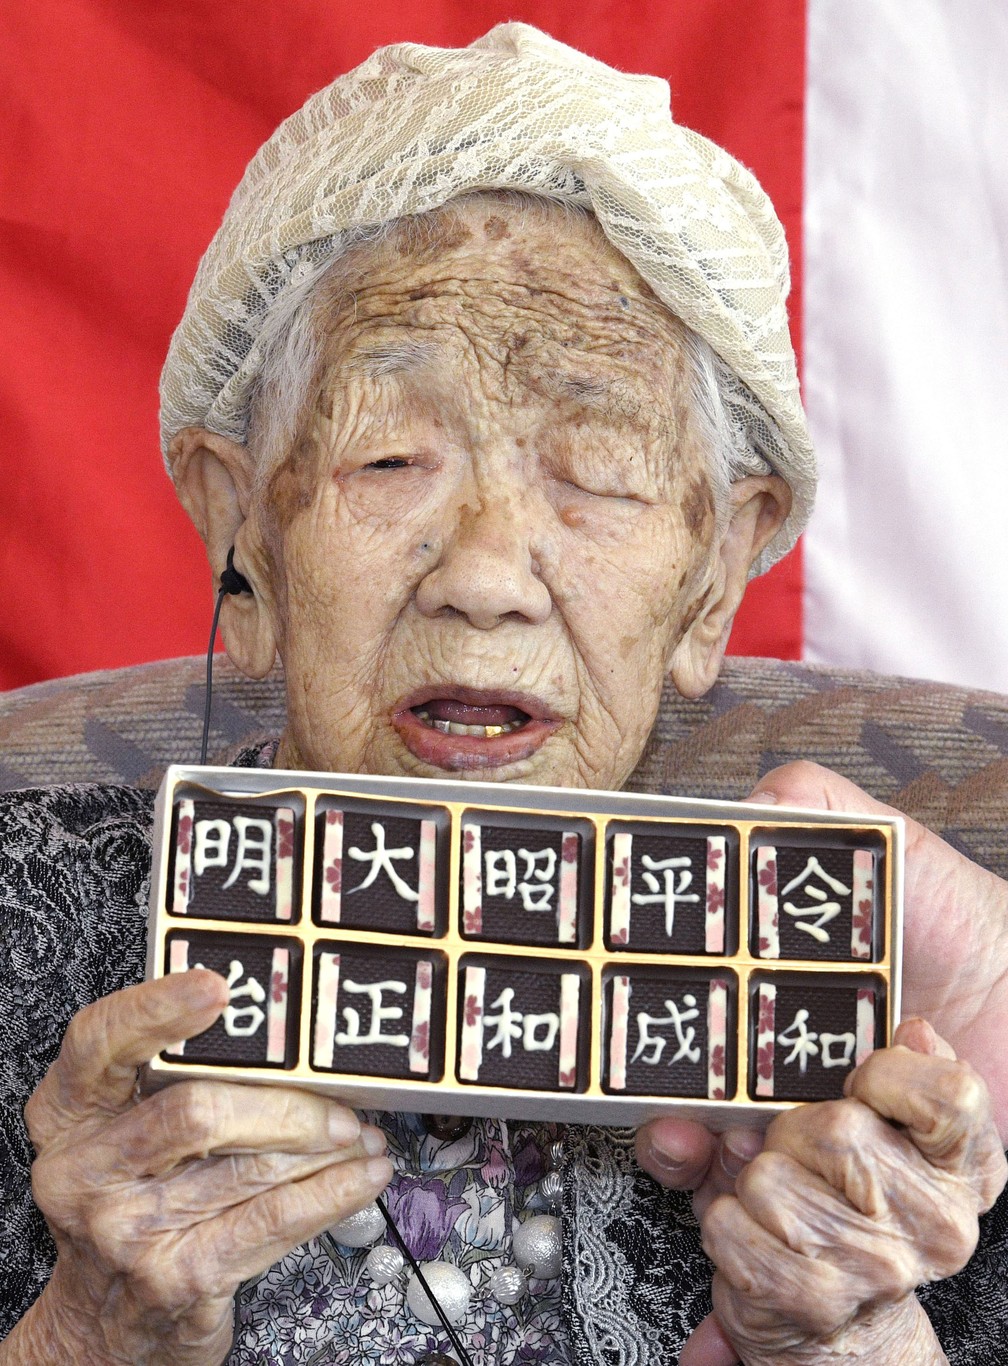 Considerada a mulher mais velha do mundo pelo livro dos recordes, a japonesa Kane Tanaka, de 116 anos, posa com chocolates que trazem o nome das eras japonesas. Tanaka nasceu durante a era Meiji, época de grande transformação no Japão. — Foto: Ryosuke Uematsu/Kyodo News via AP